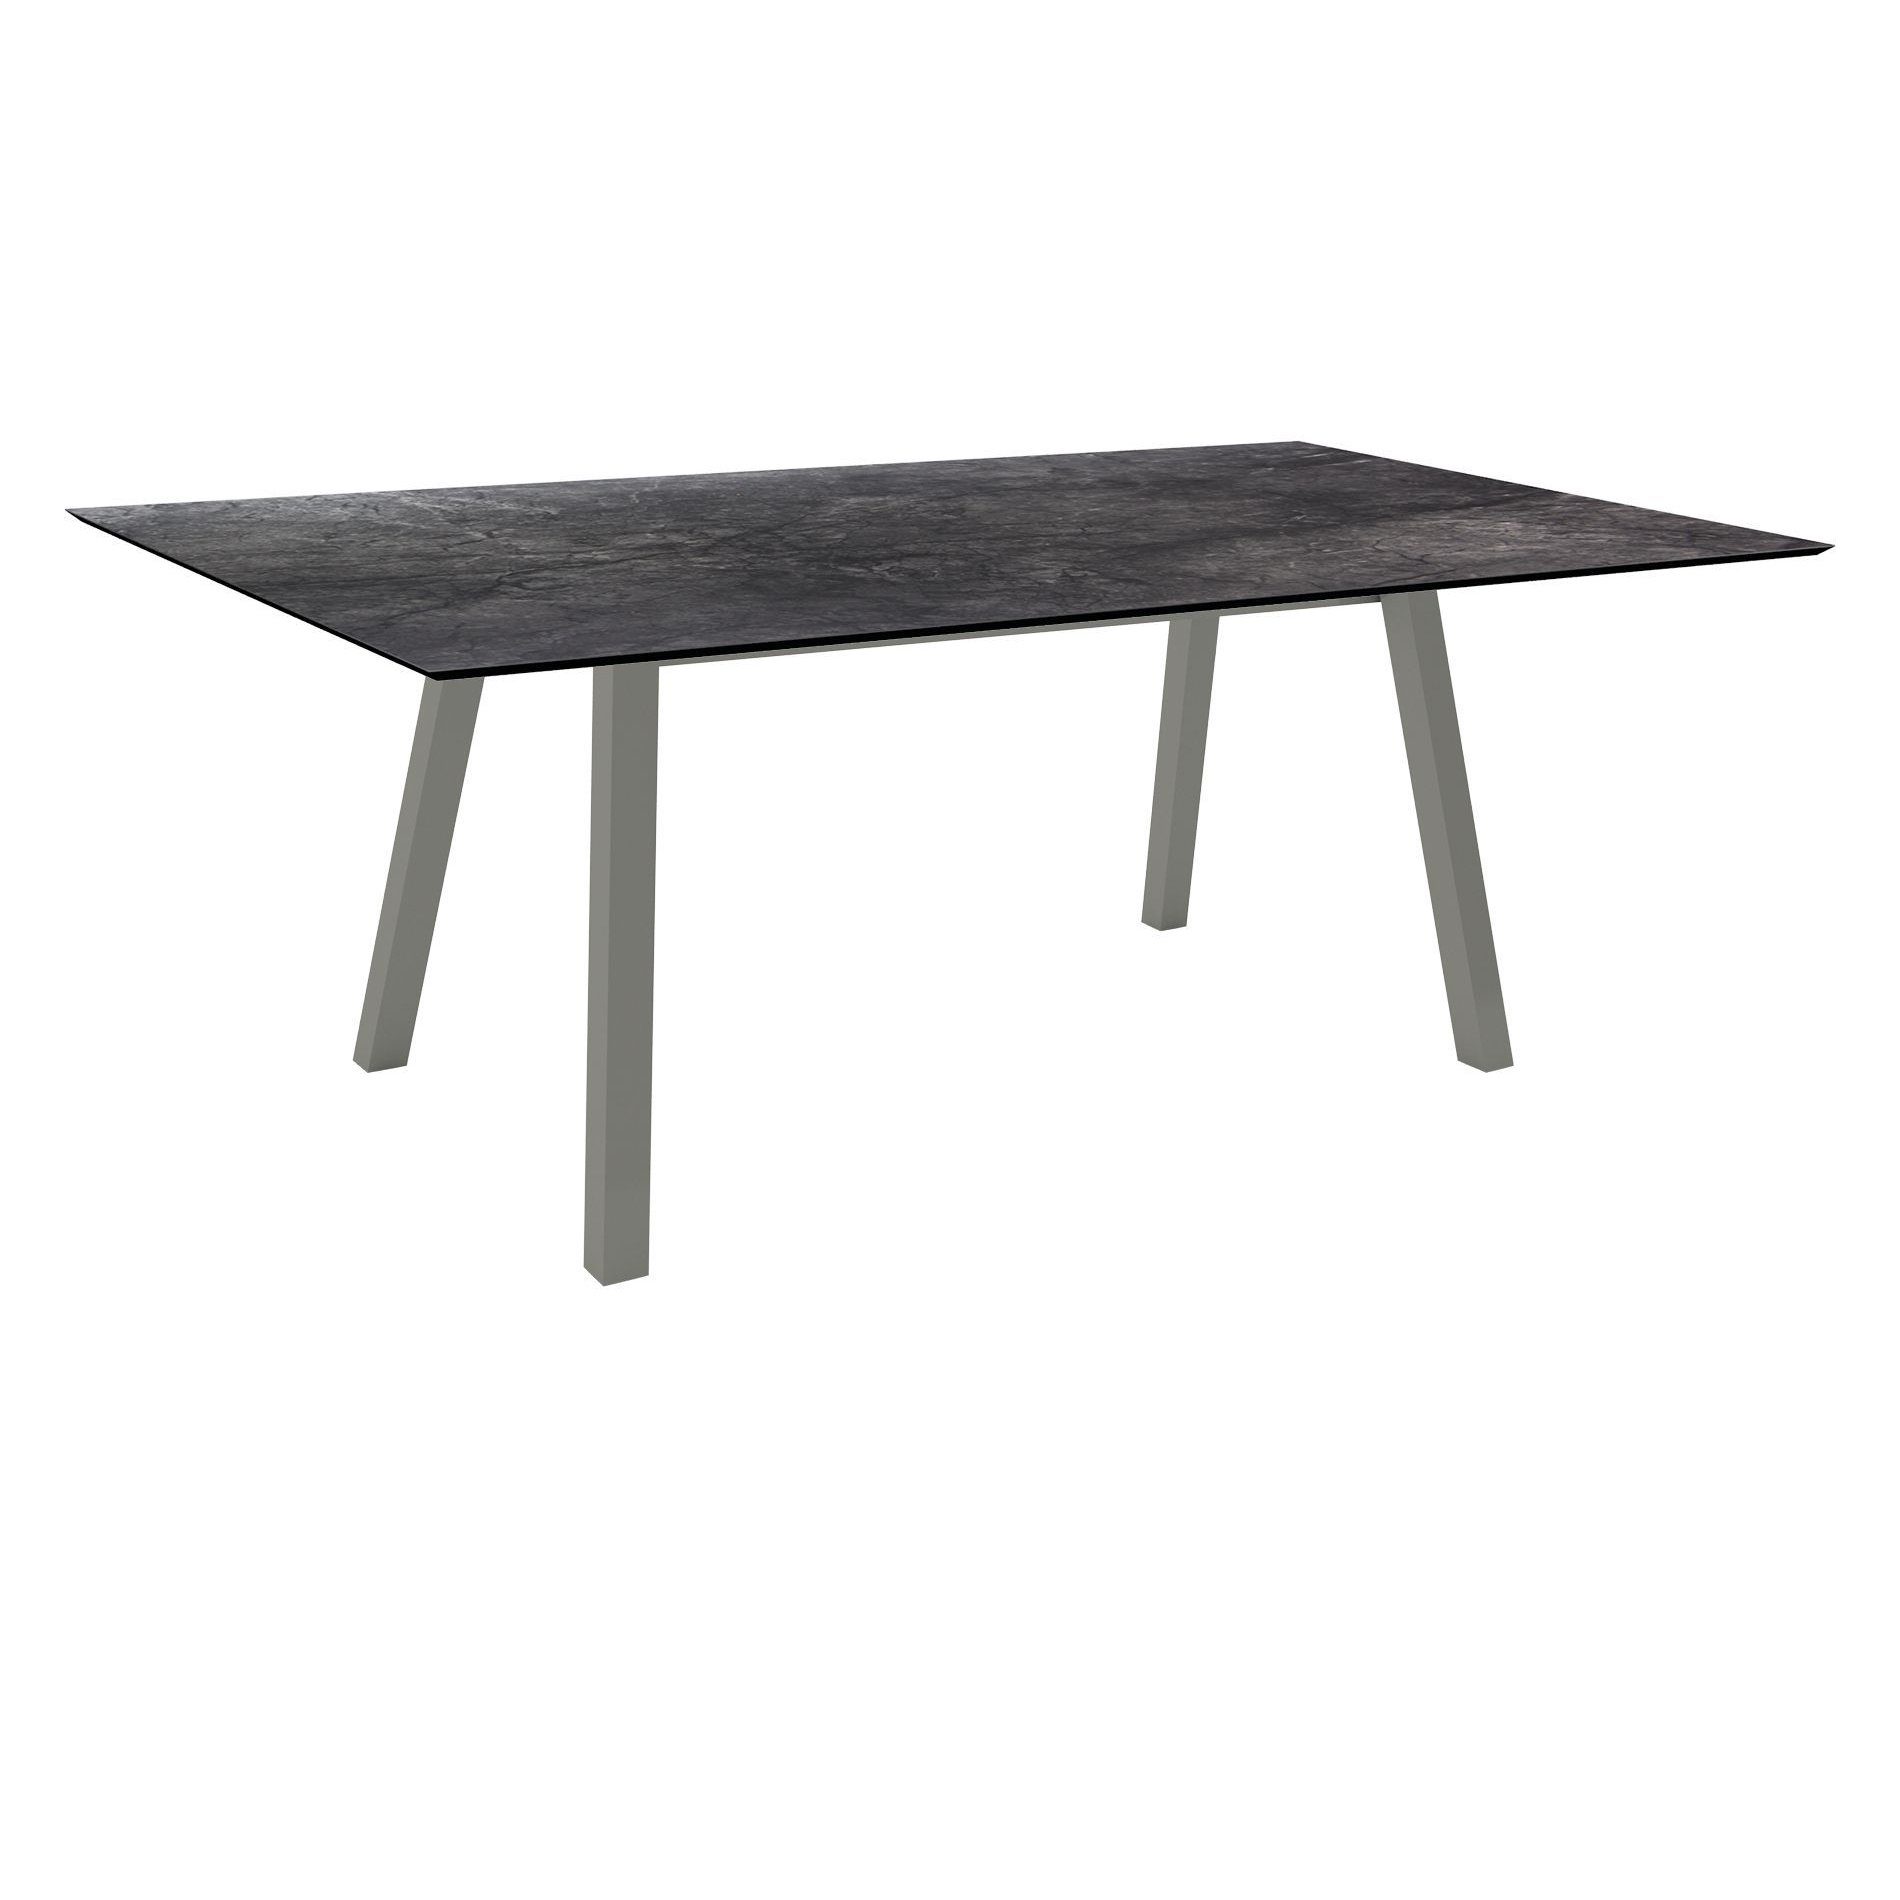 Stern Tisch "Interno", Größe 180x100cm, Alu graphit, Vierkantrohr, Tischplatte HPL Dark Marble